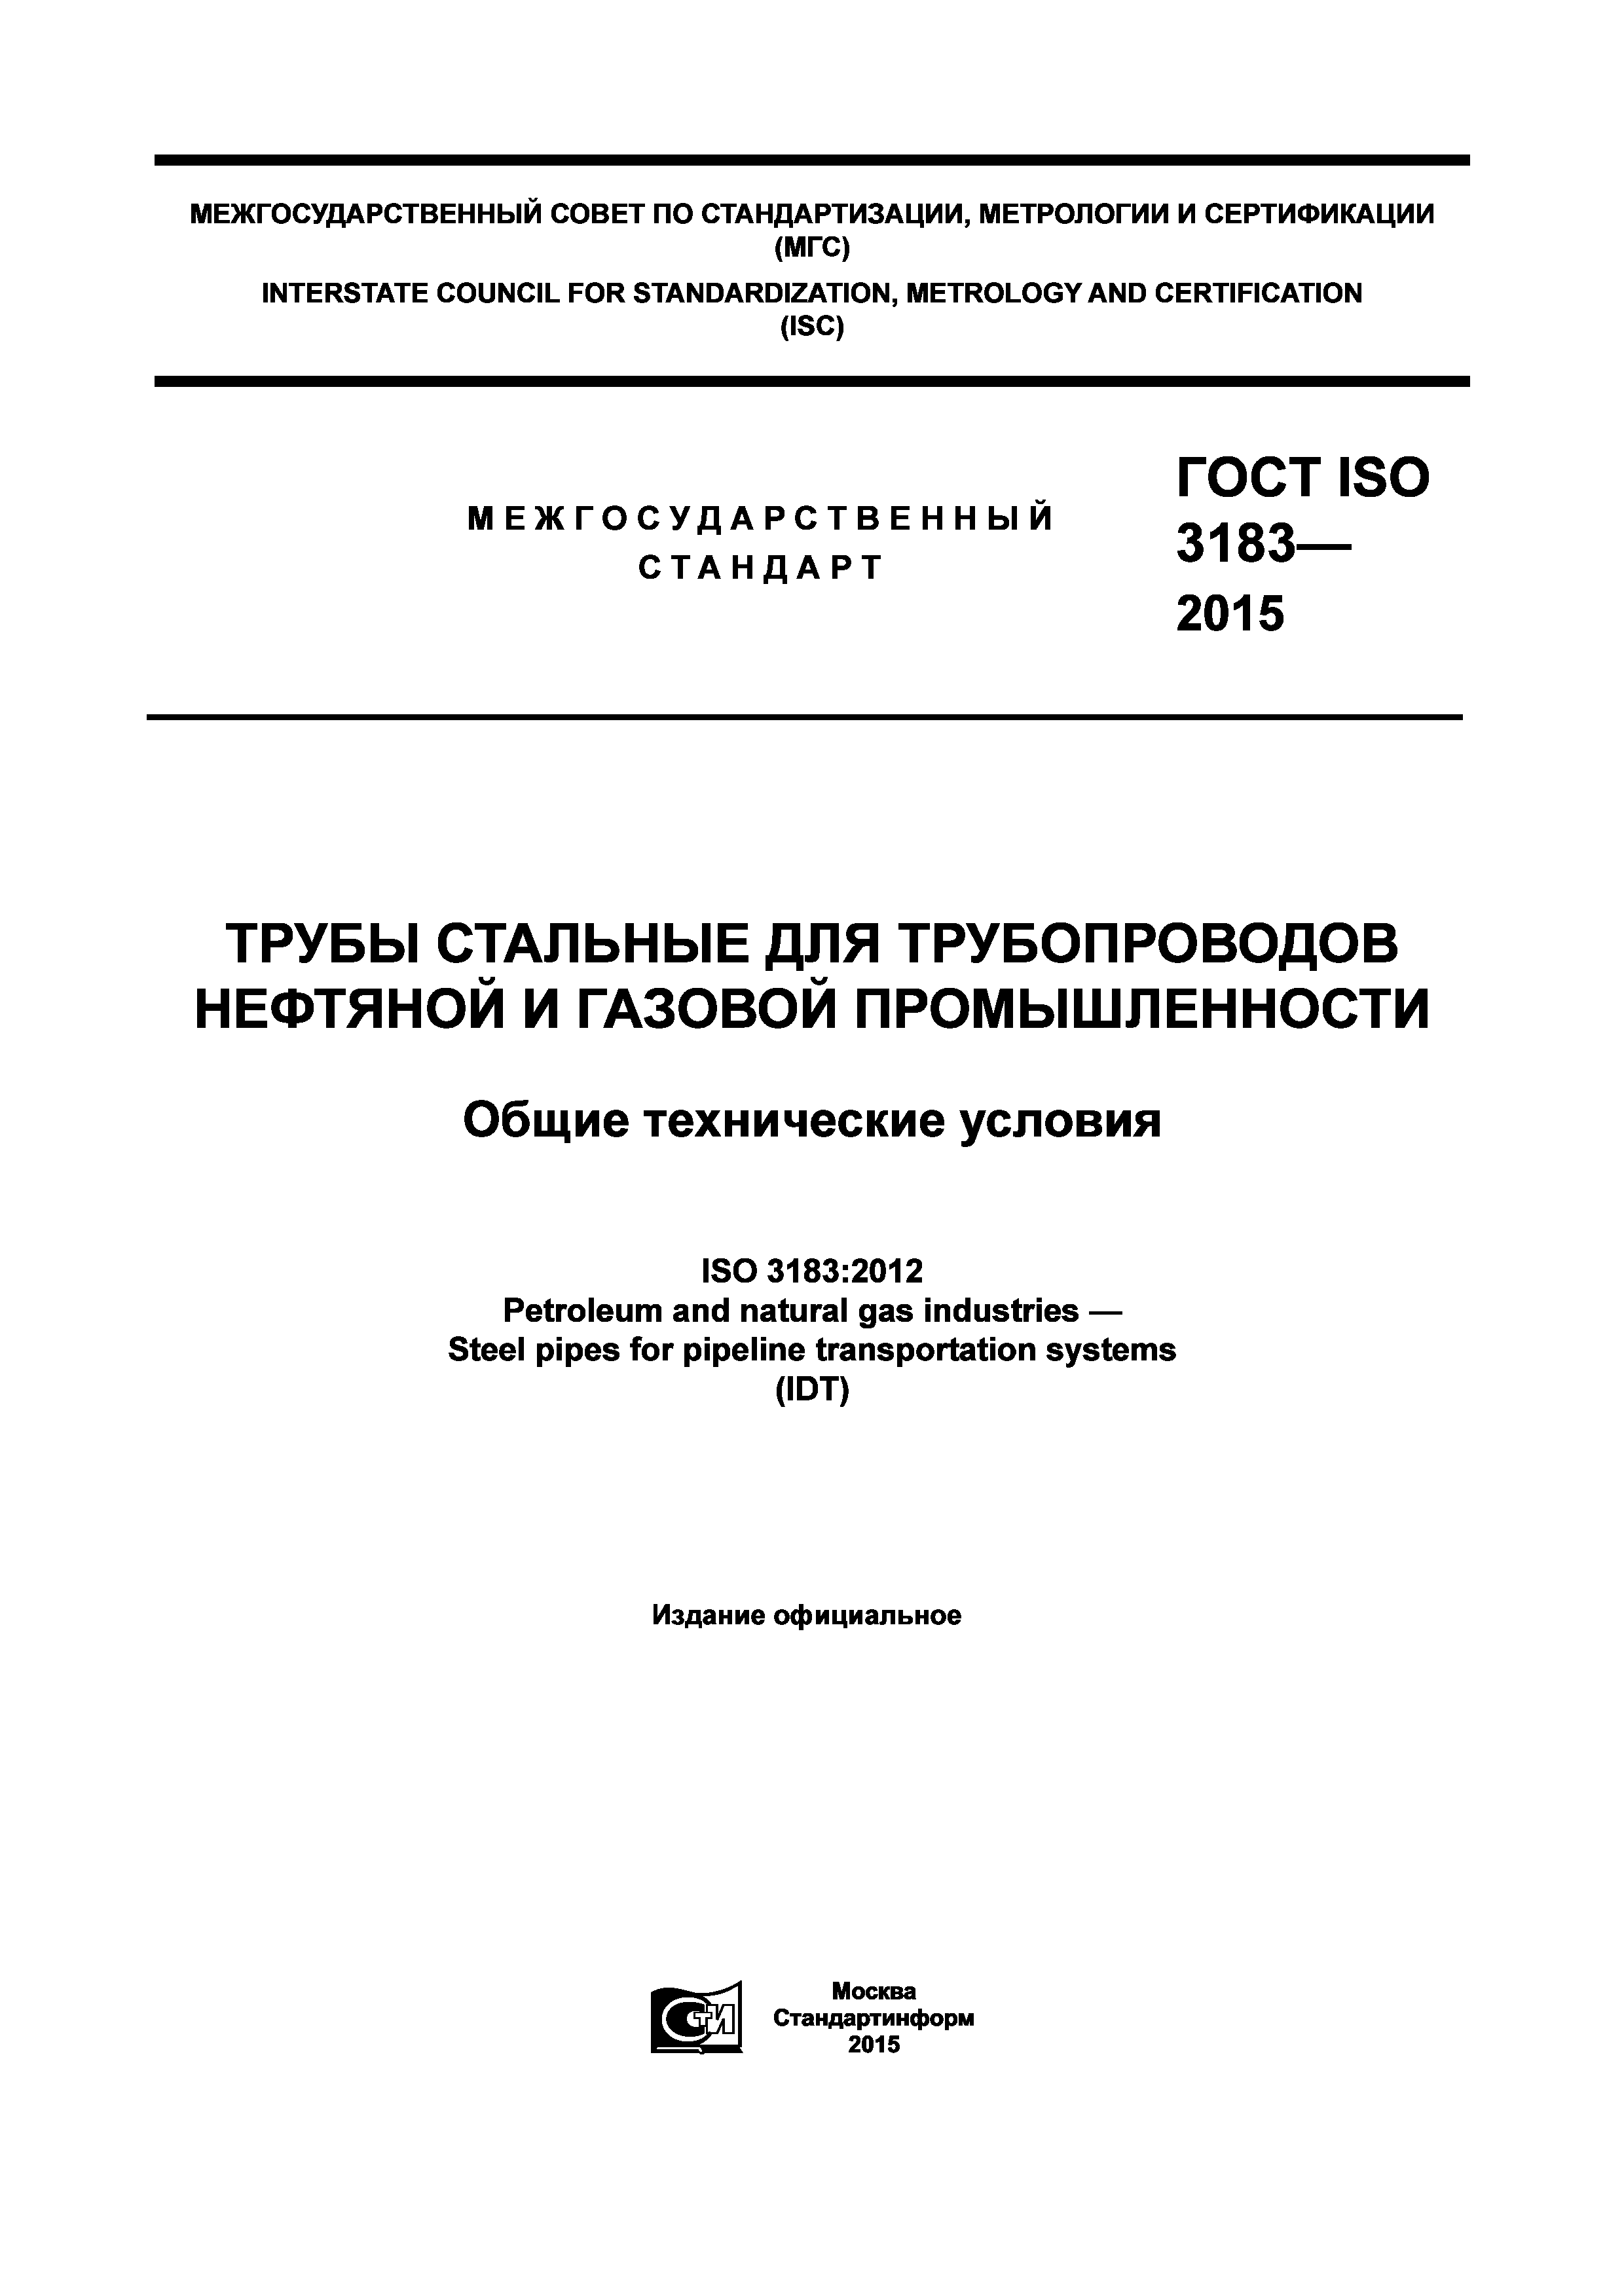 ГОСТ ISO 3183-2015